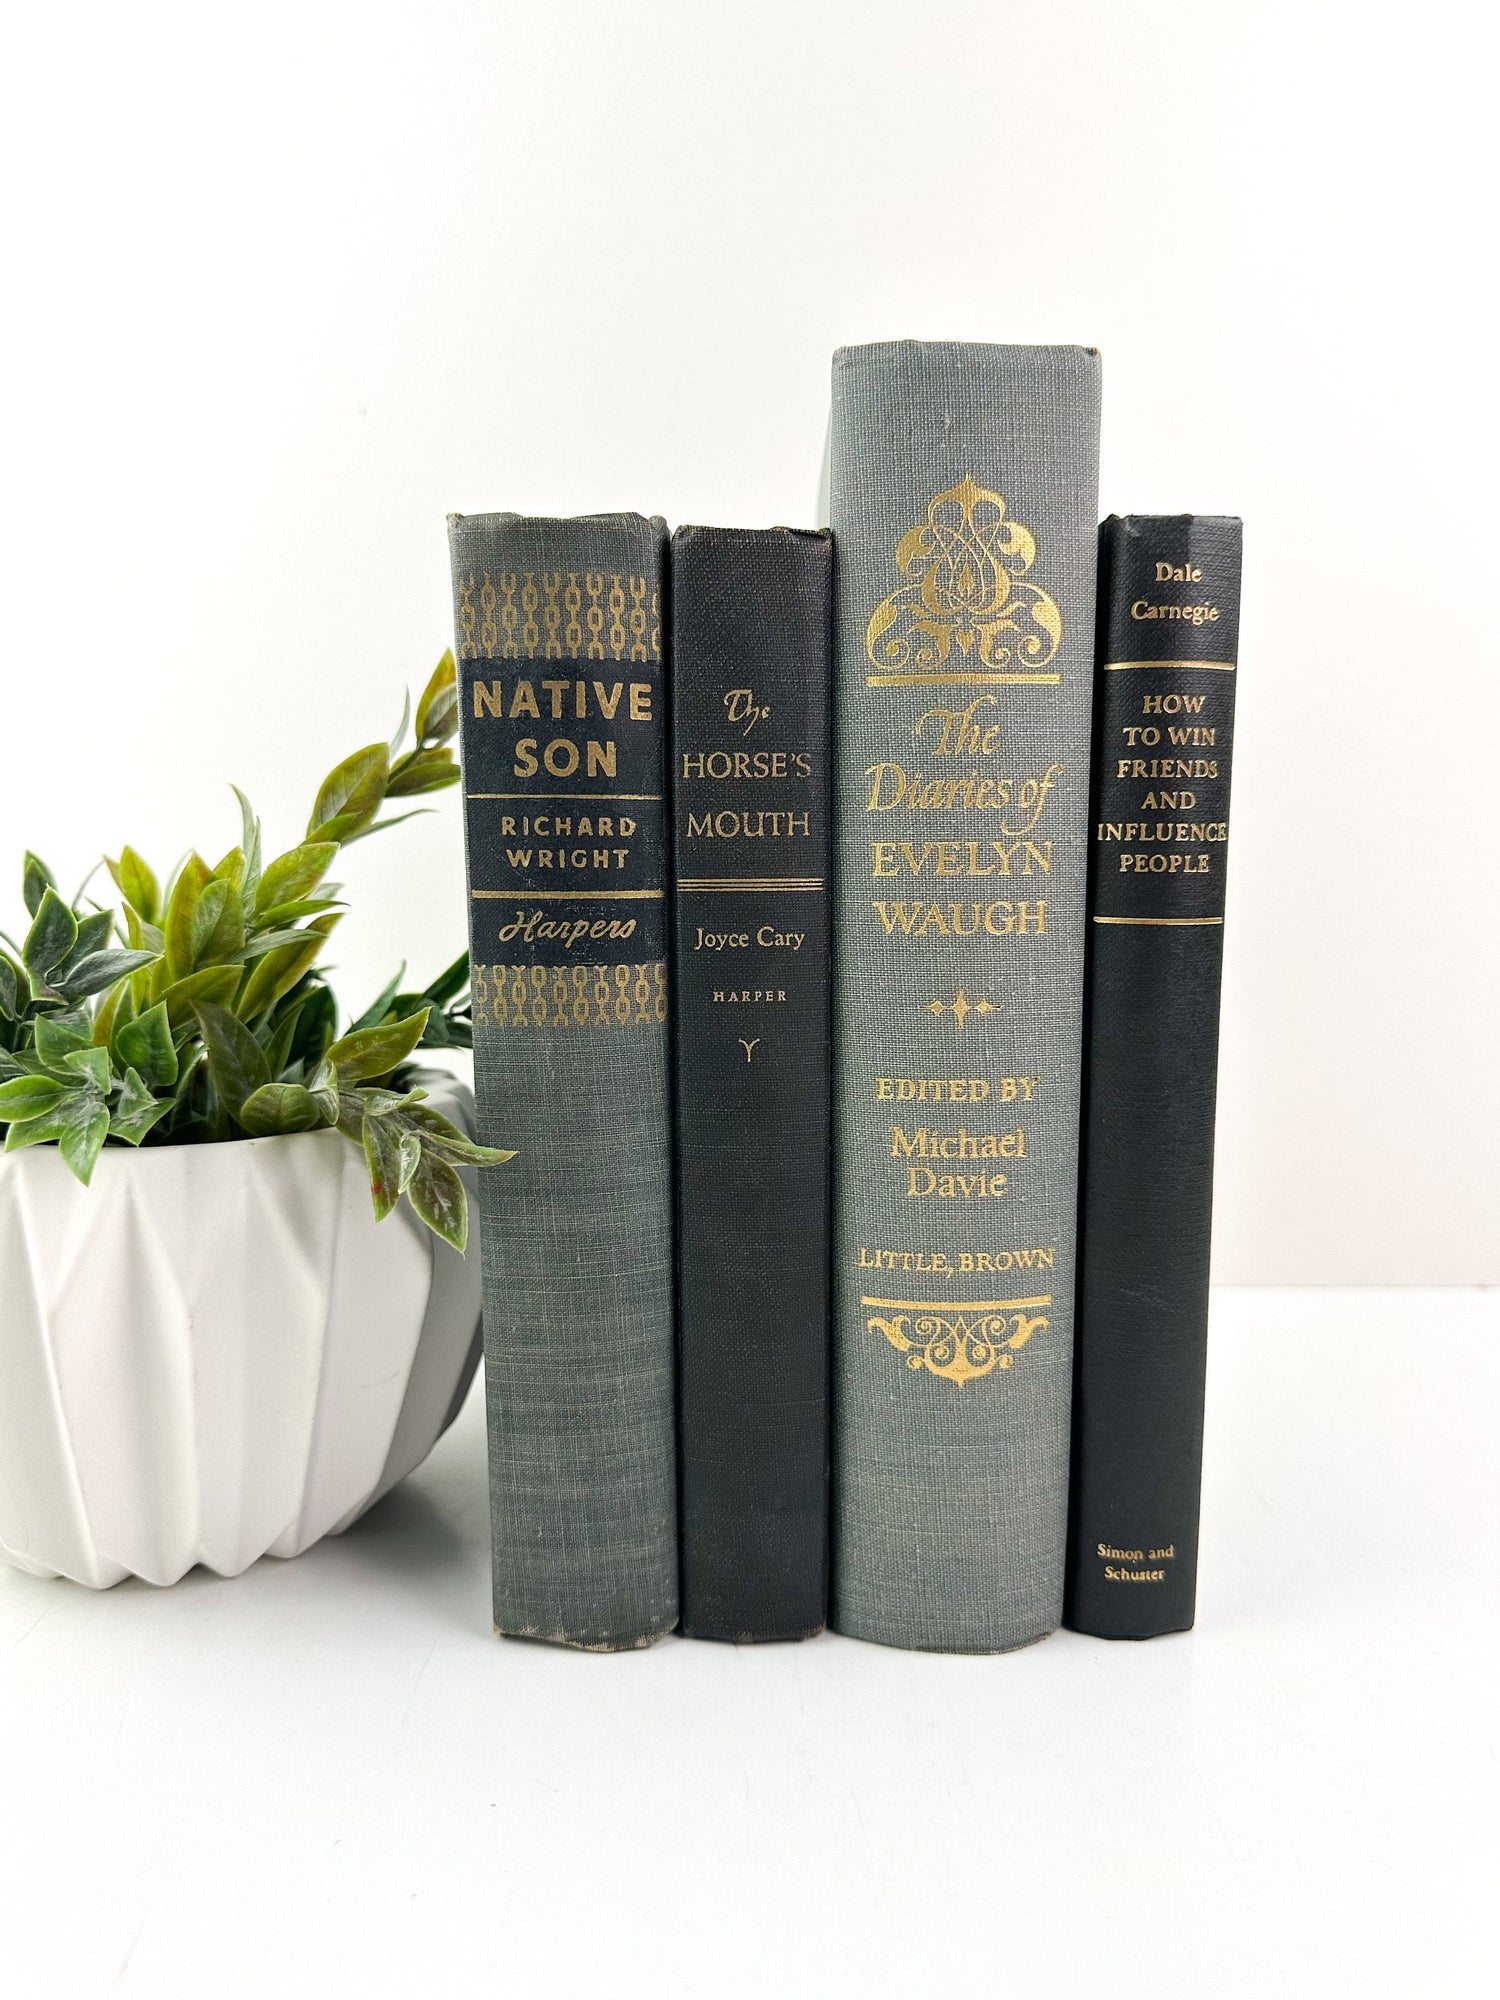 Gray Decorative Books for Living Room Decor, Book Set for Shelf Decor, Book Bundle, Table Decor